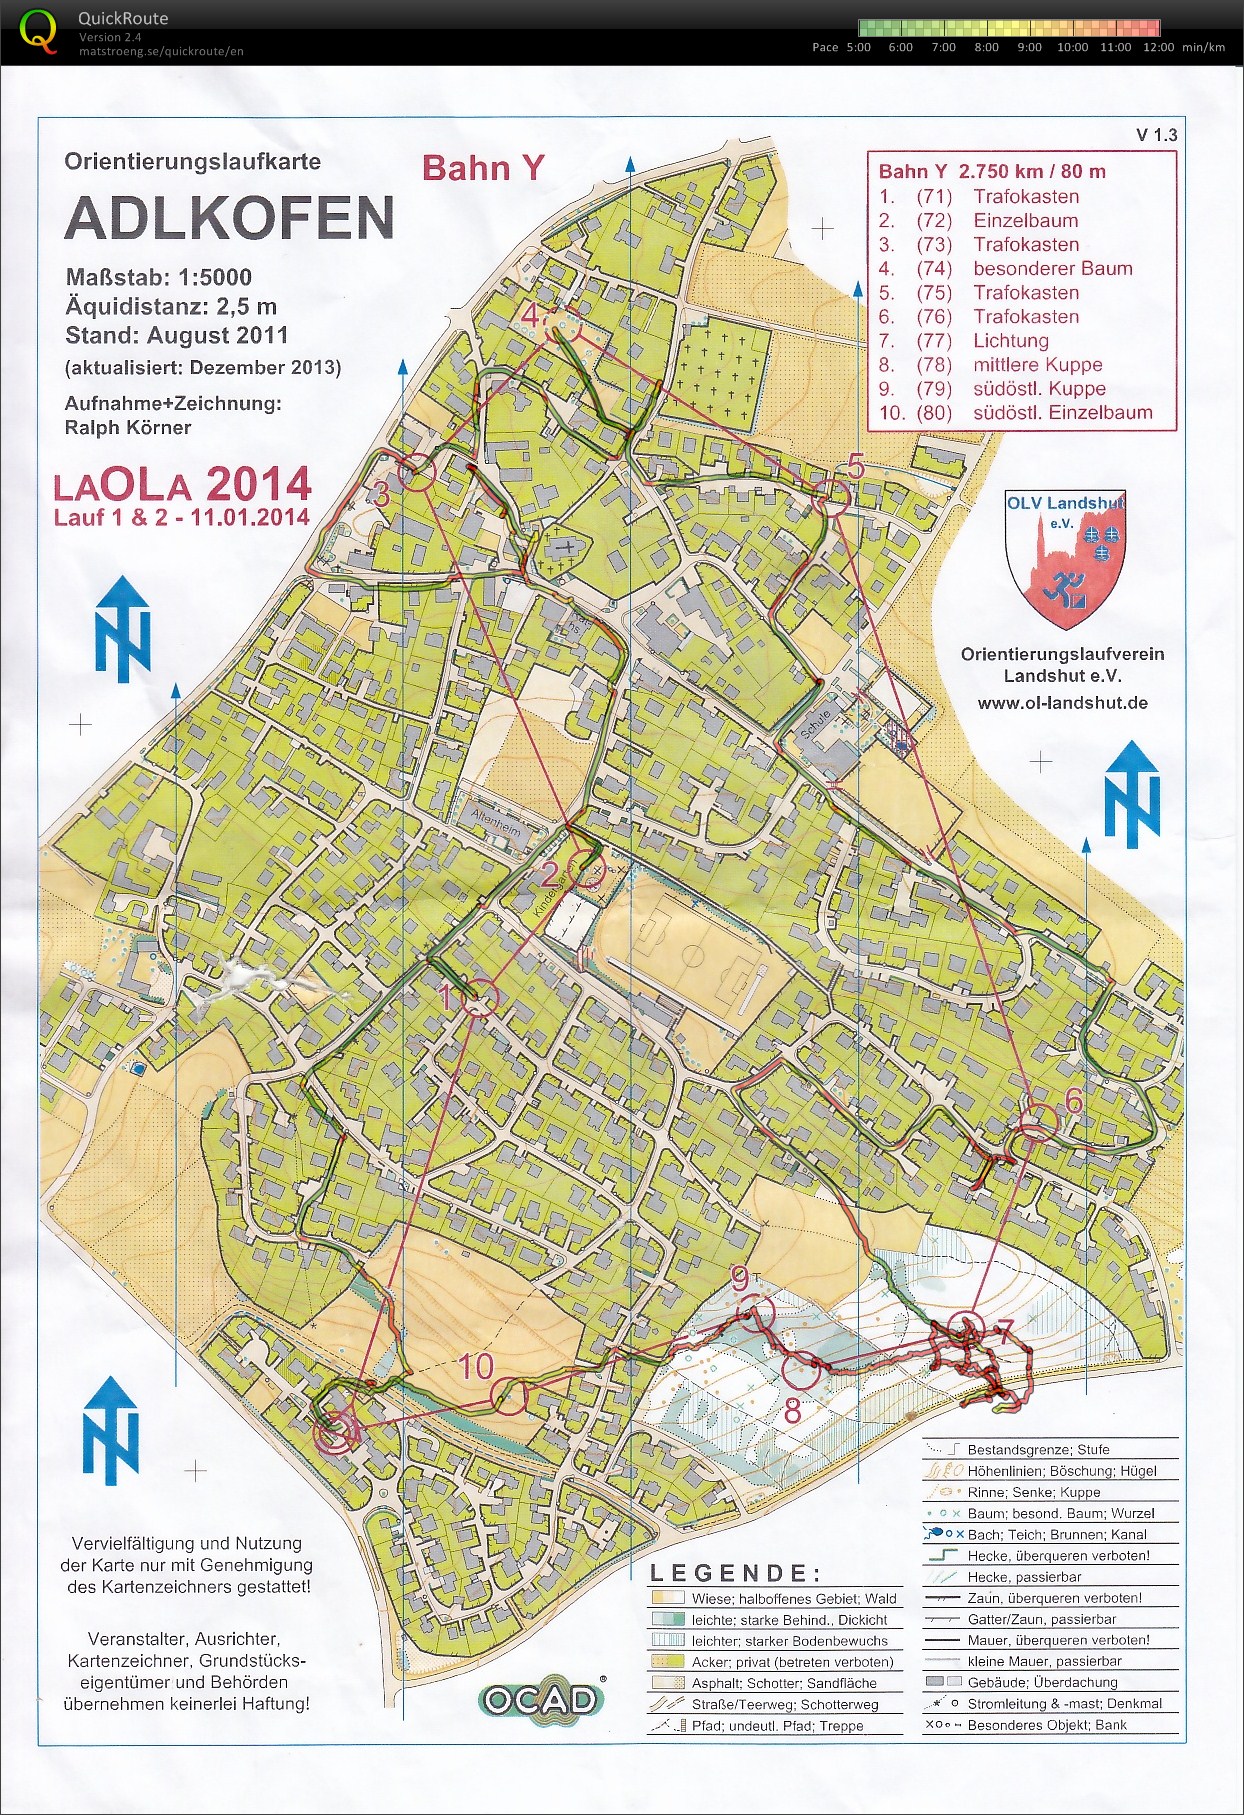 LaOLa 2014 Lauf 1 (11.01.2014)